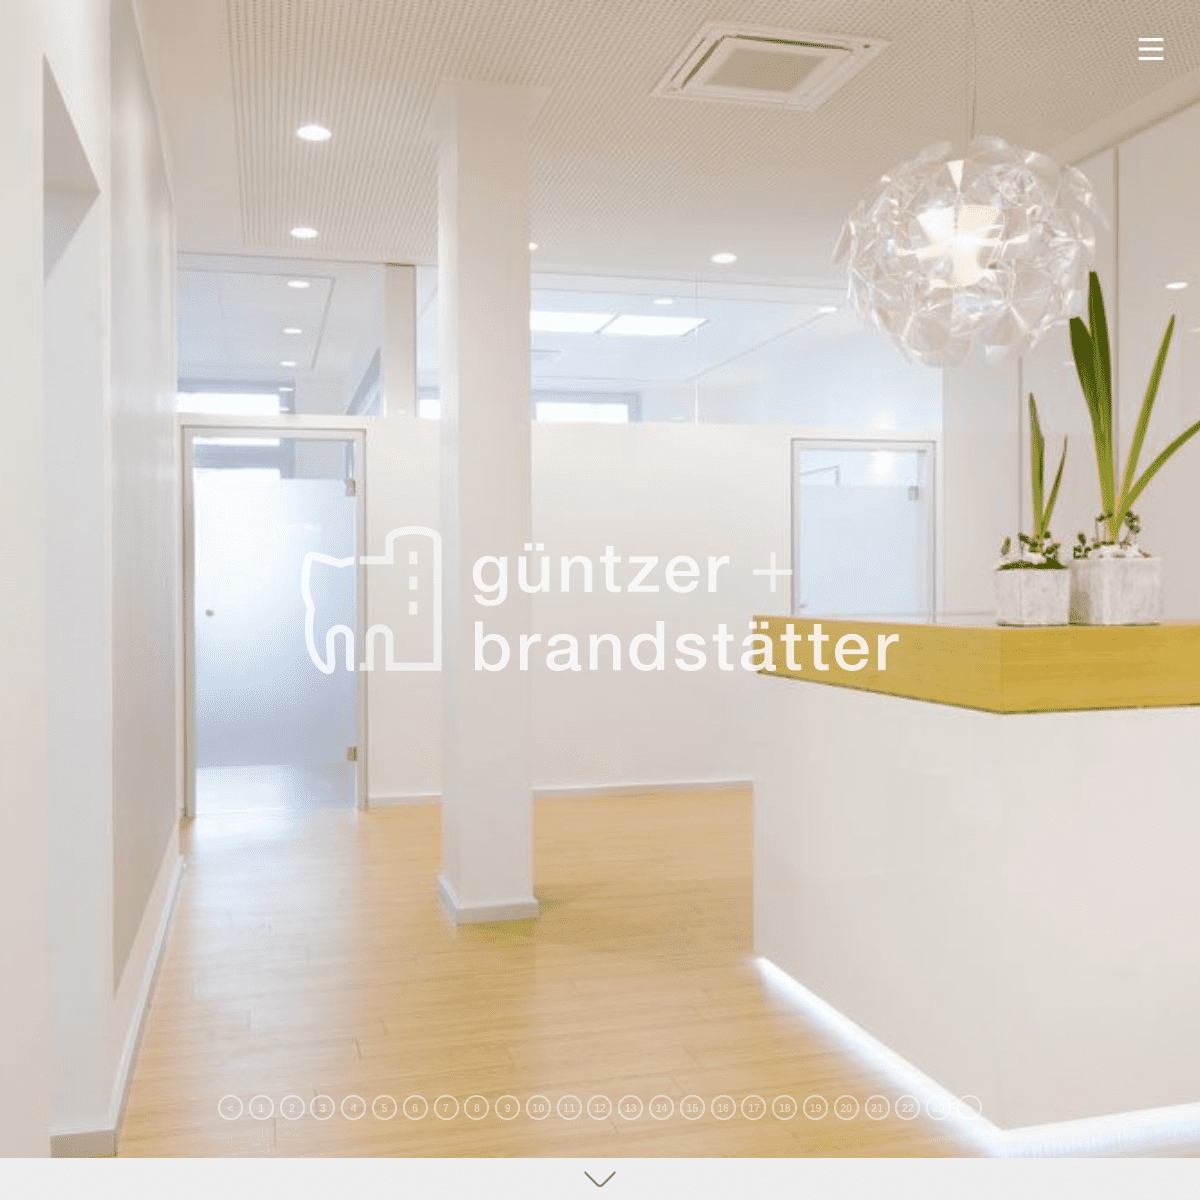 A complete backup of guentzer-brandstaetter.de